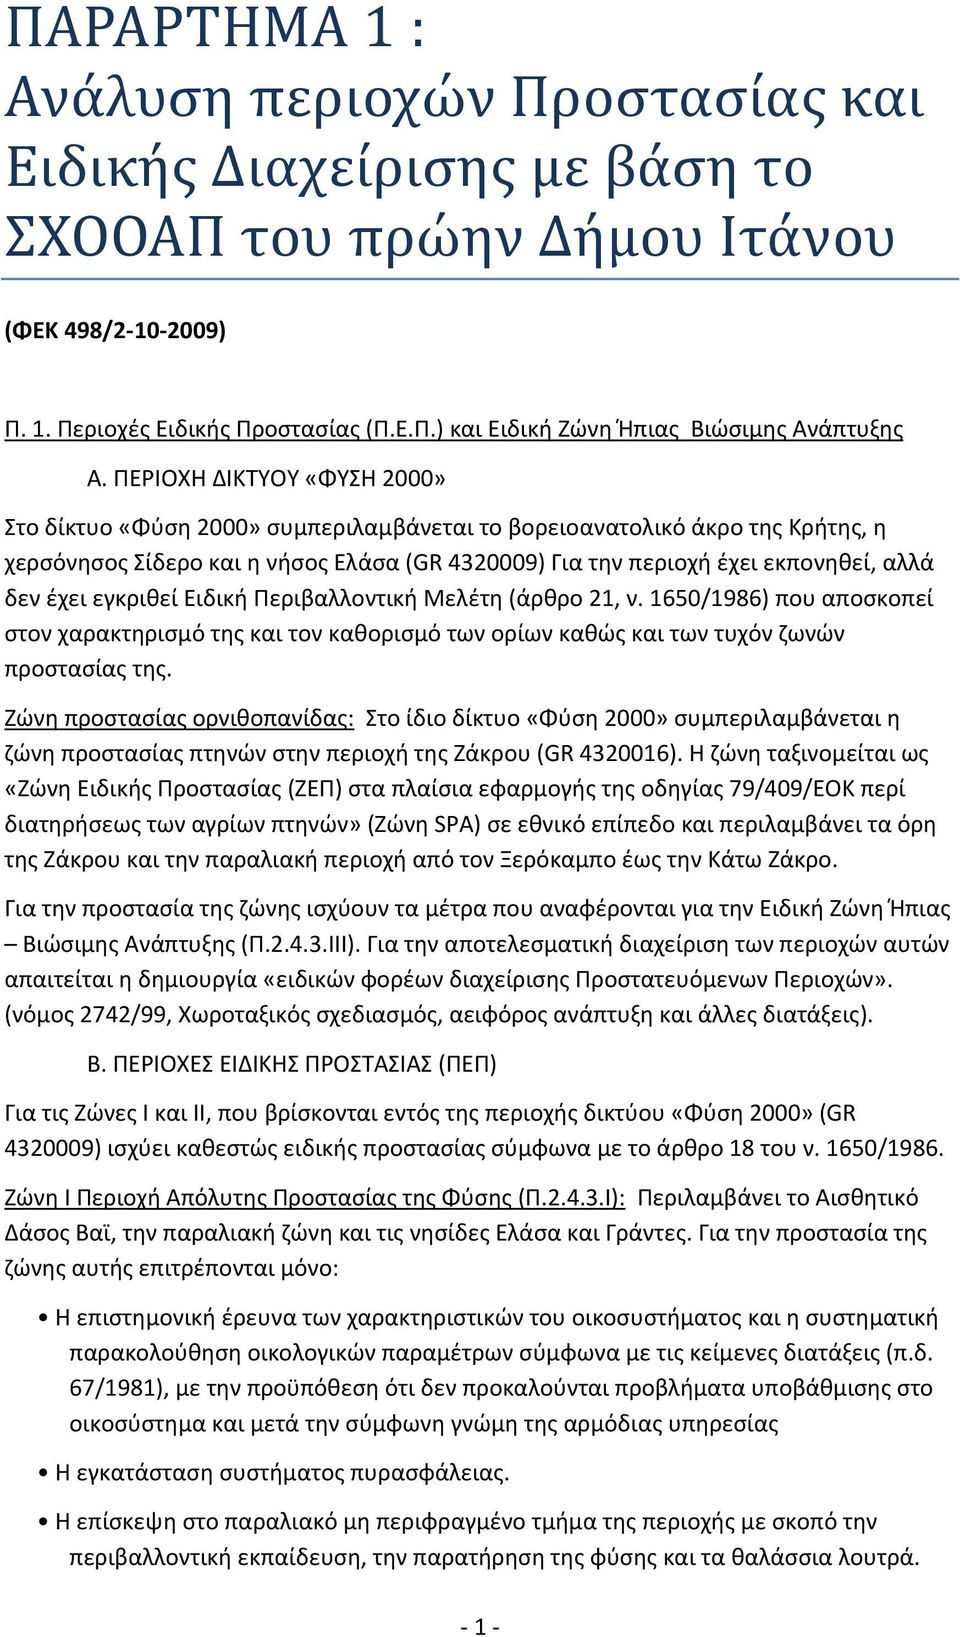 ΠΑΡΑΡΤΗΜΑ 1 : Ανάλυση περιοχών Προστασίας και Ειδικής Διαχείρισης με βάση  το ΣΧΟΟΑΠ του πρώην Δήμου Ιτάνου - PDF Free Download